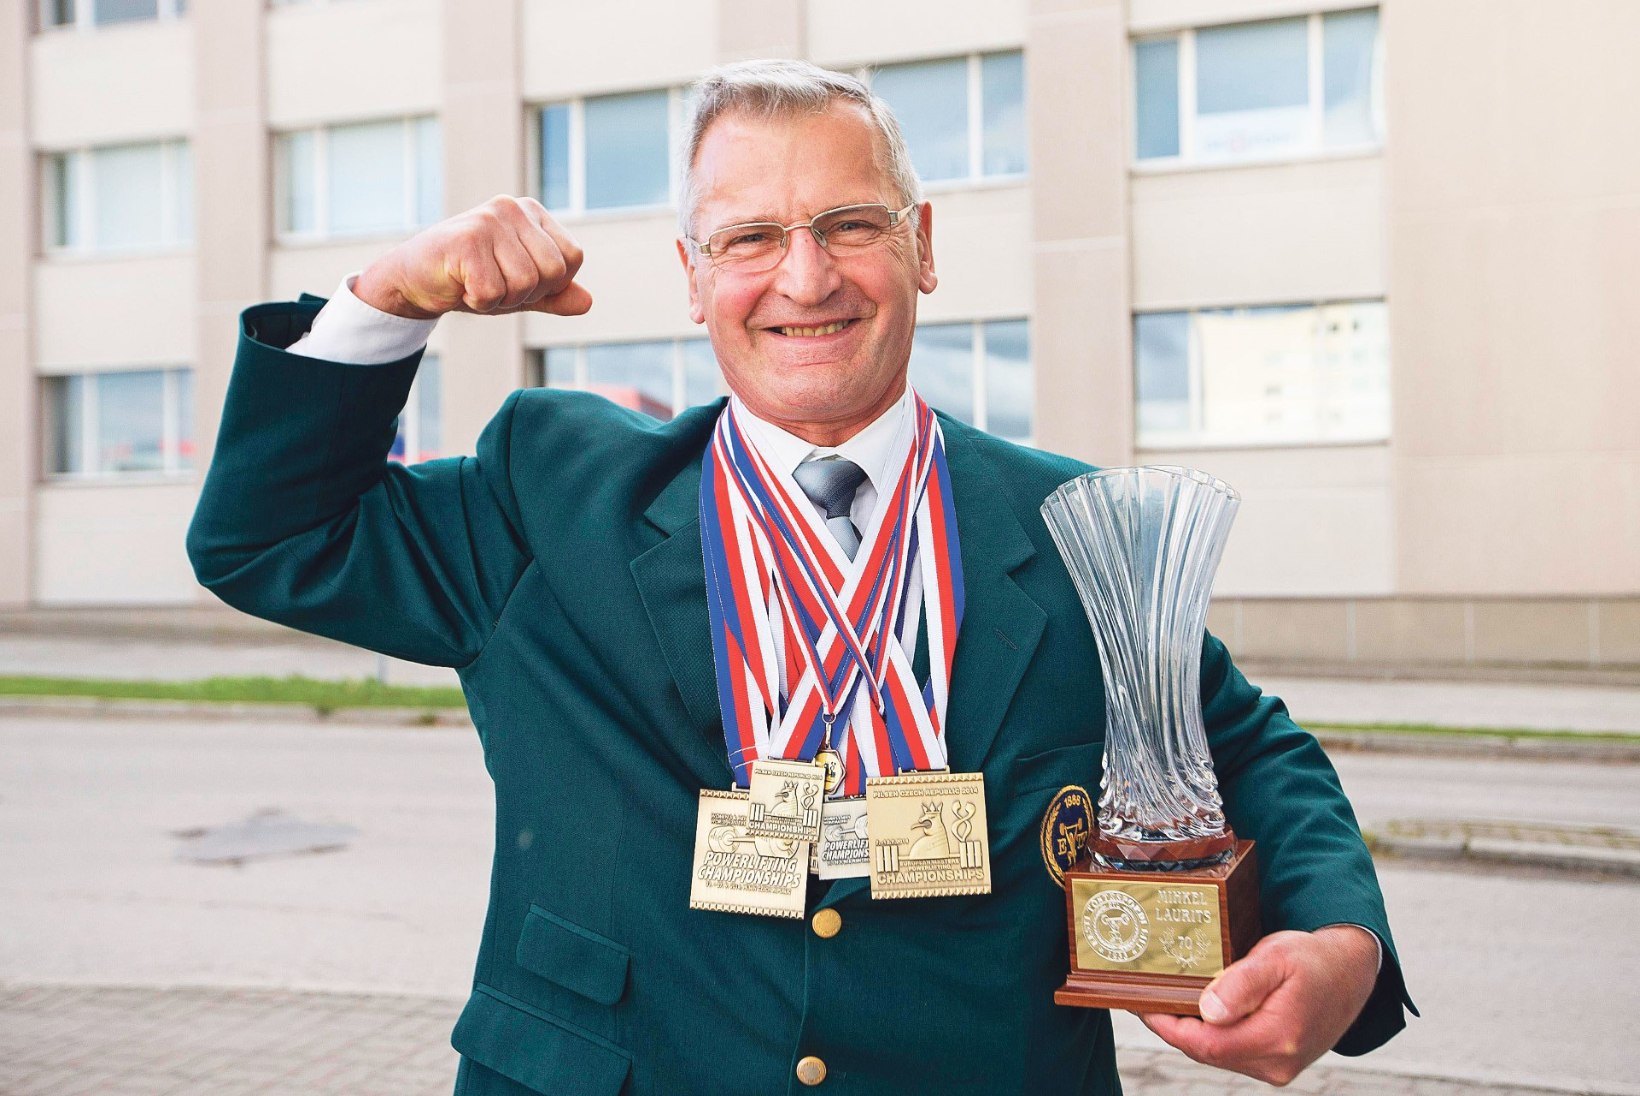 70aastane maailmameister, kelles pulbitseb noore mehe jõud ja hing